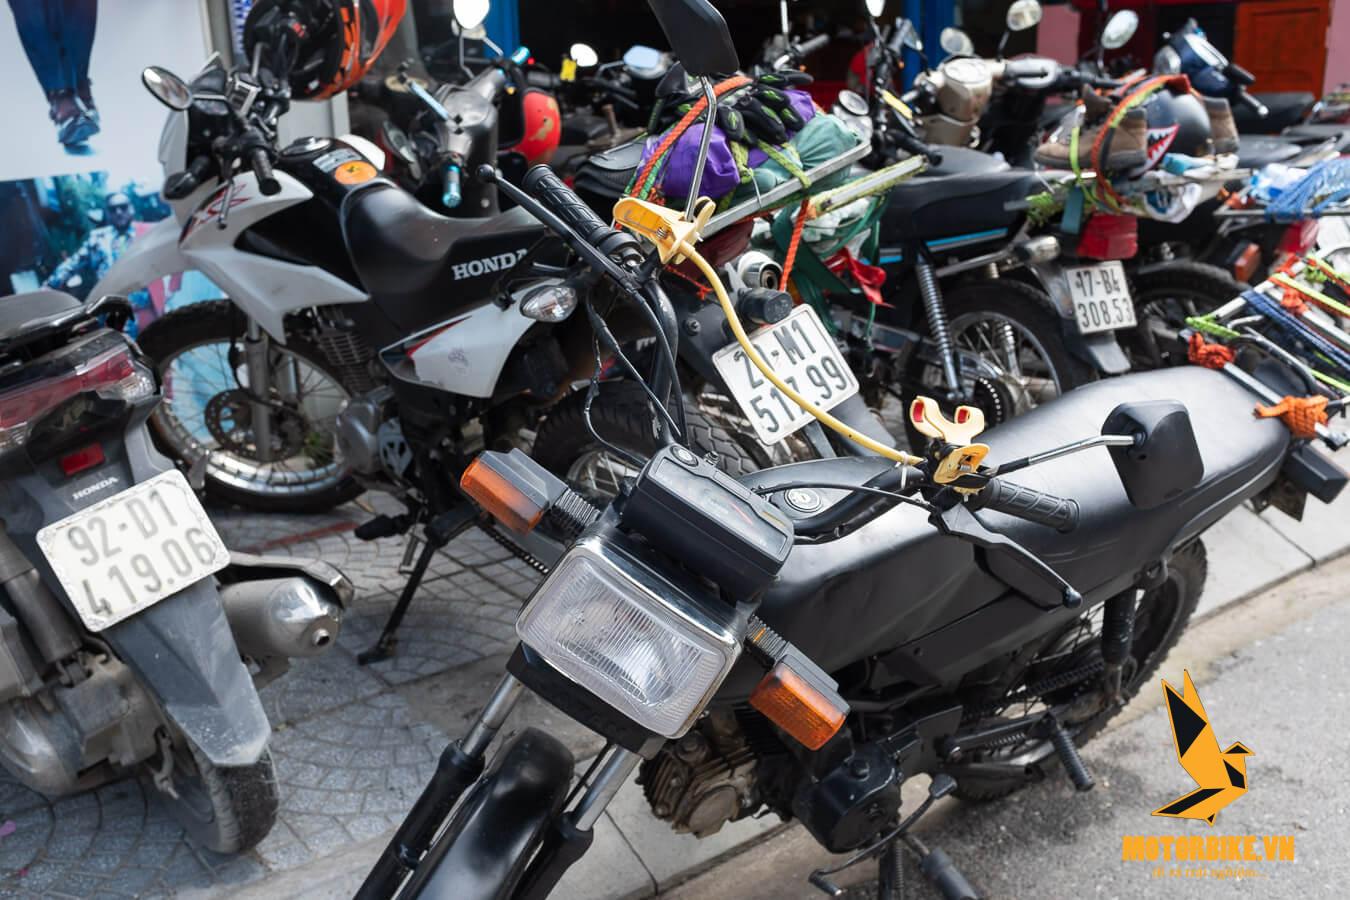 Cửa hàng cho thuê xe máy quận Thanh Khê Đà Nẵng Tripbike - Gia Khánh